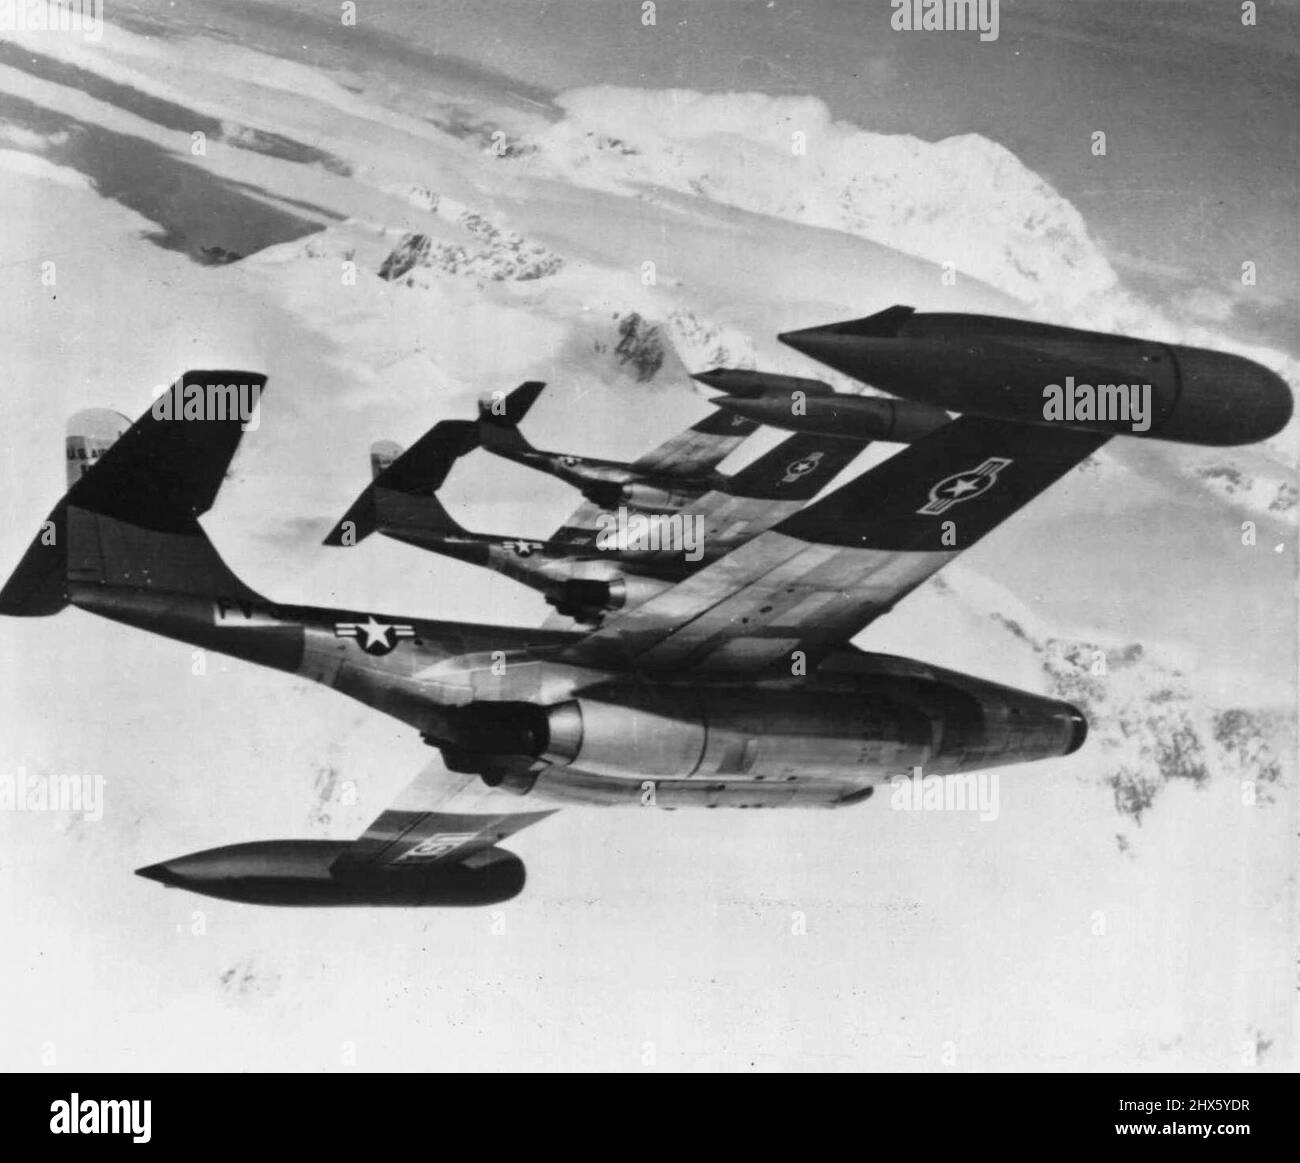 Les Jets américains volent au-dessus de l'Arctique -- trois intercepteurs tous temps de la U.S. Air Force Northrop Scorpion F89D survolent en étroite formation au-dessus de l'Arctique gelé. Affectés à l'escadron 64th Fighter-Interceptor de la base aérienne d'Elmendorf, à Anchorage, en Alaska, ces avions de 600 miles par heure font partie de la flotte de défense aérienne américaine qui protège les approches vitales des États-Unis contre les attaques aériennes. Les avions sont les combattants les plus lourdement armés de l'Amérique. 10 novembre 1954. (Photo par AP Wirephoto).;American Jets Banque D'Images